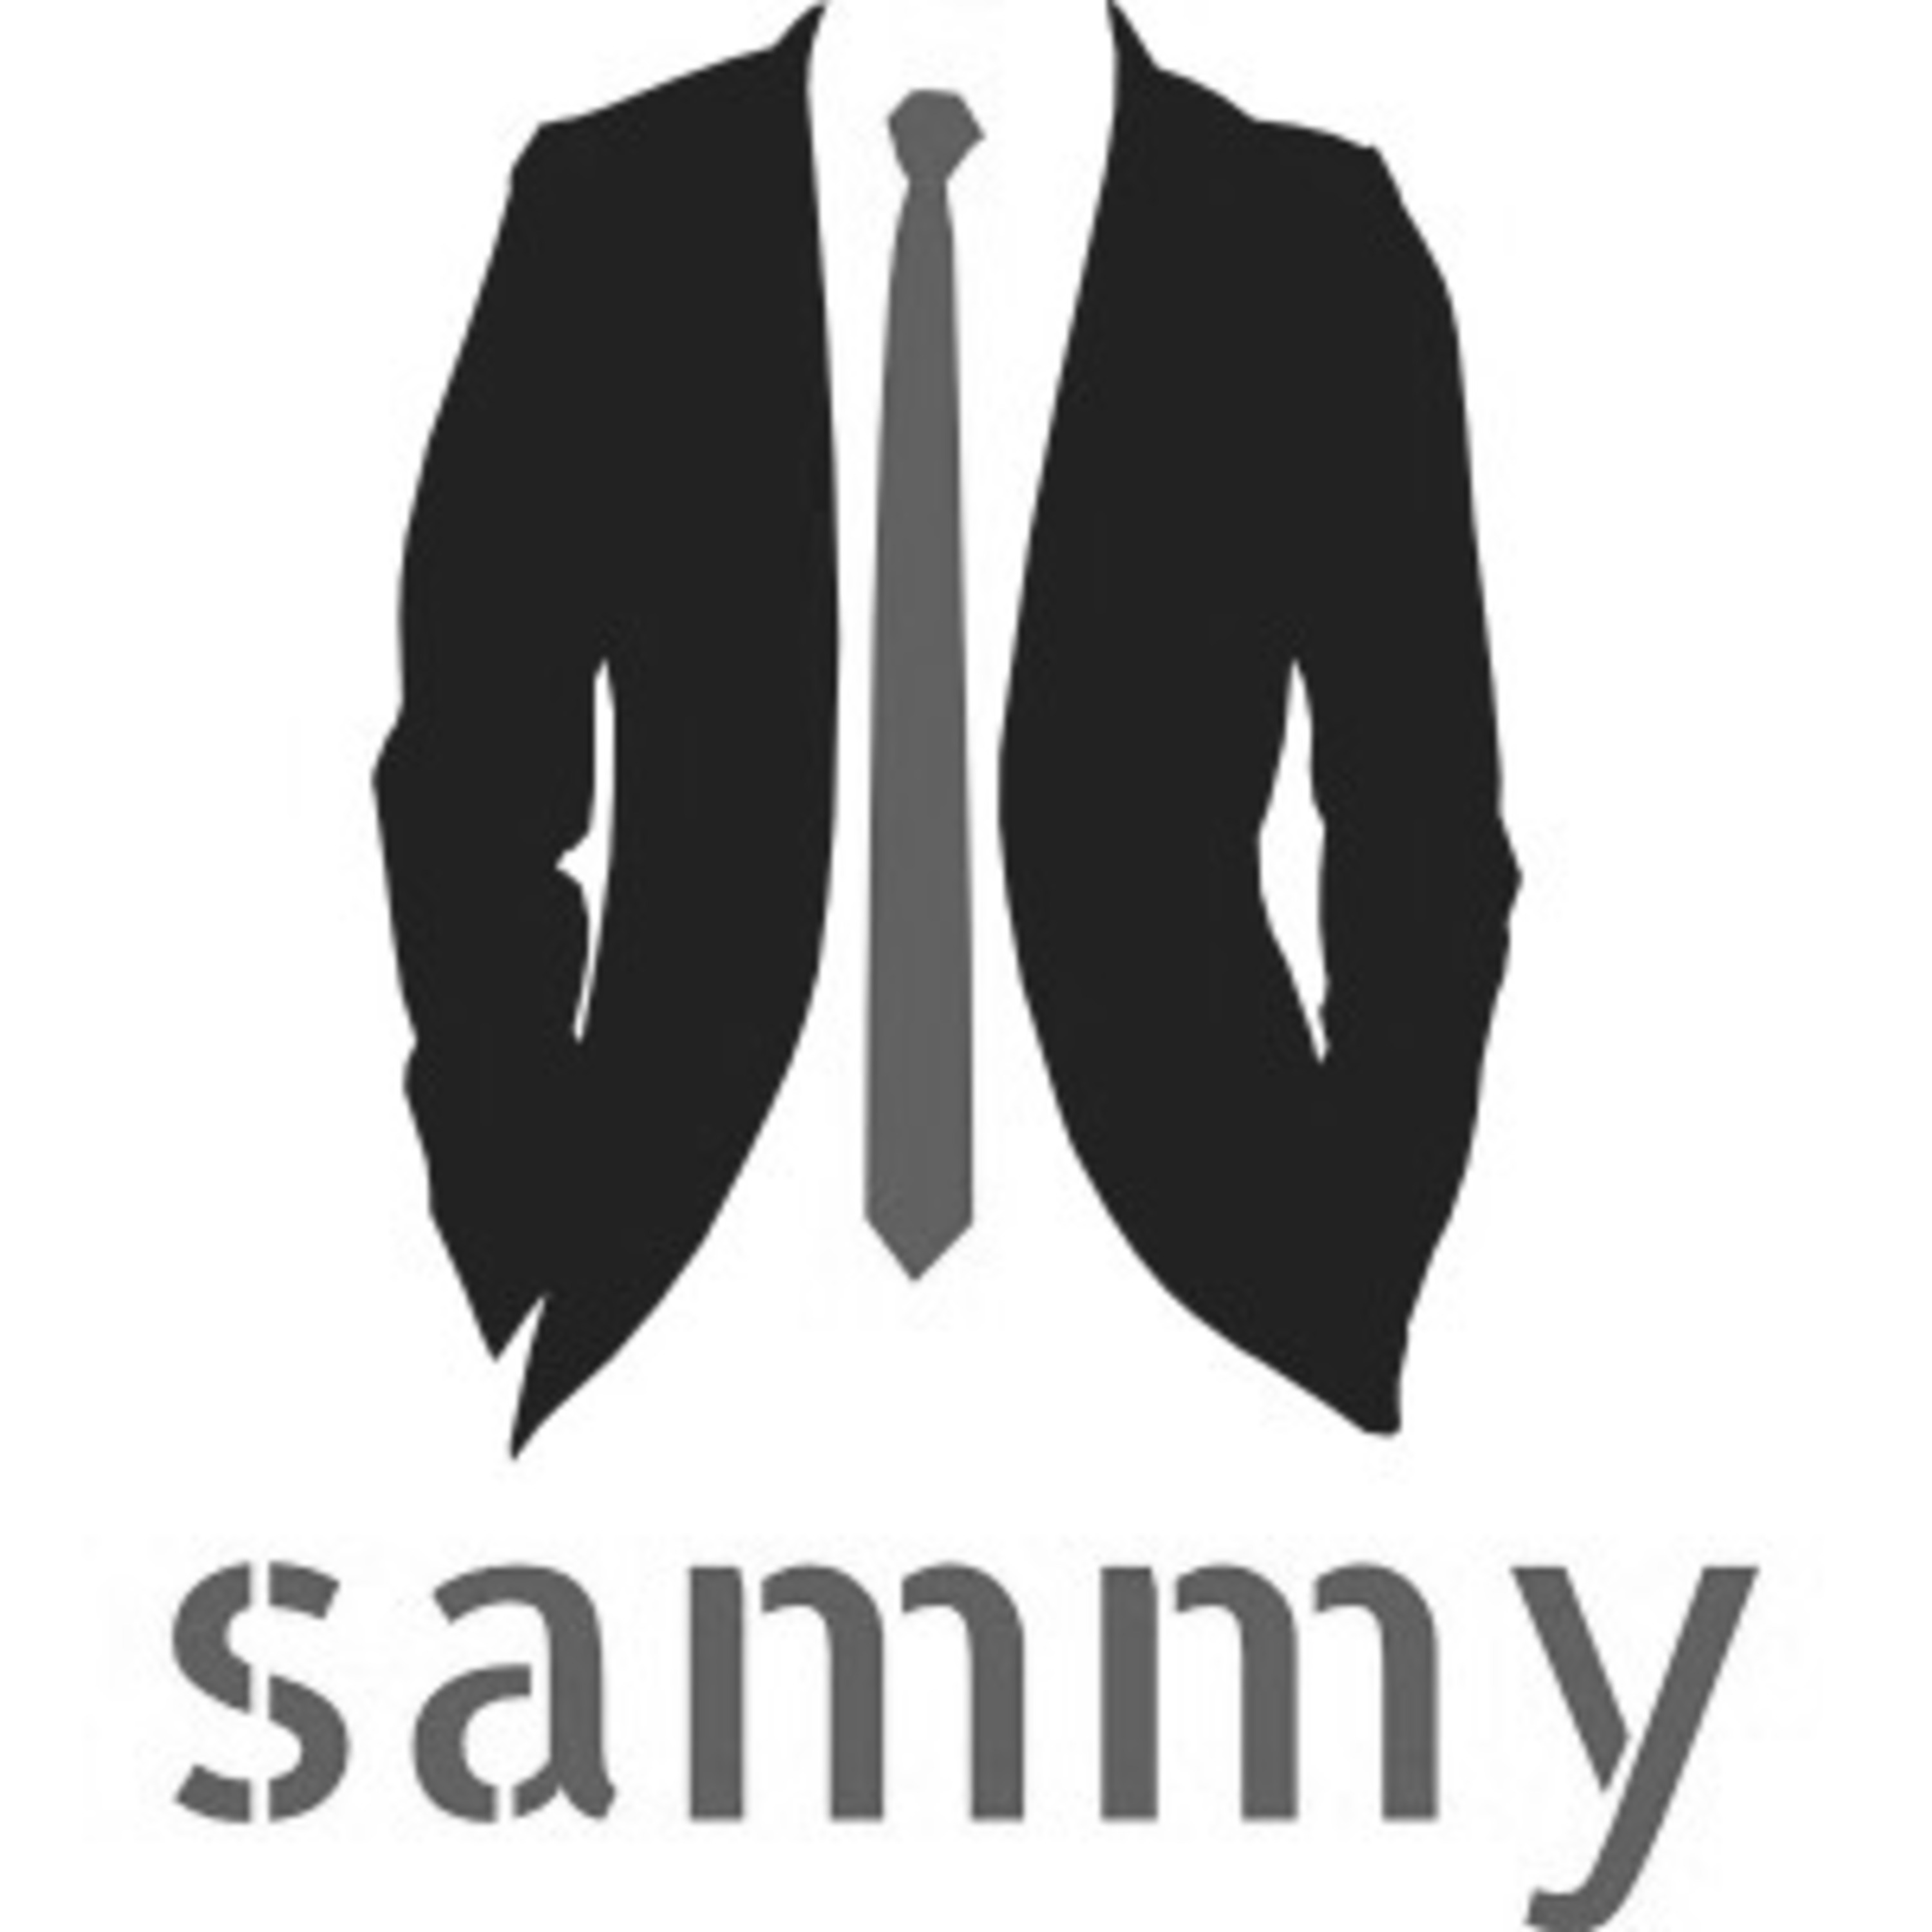 051_Dj Sammy - HouseMania